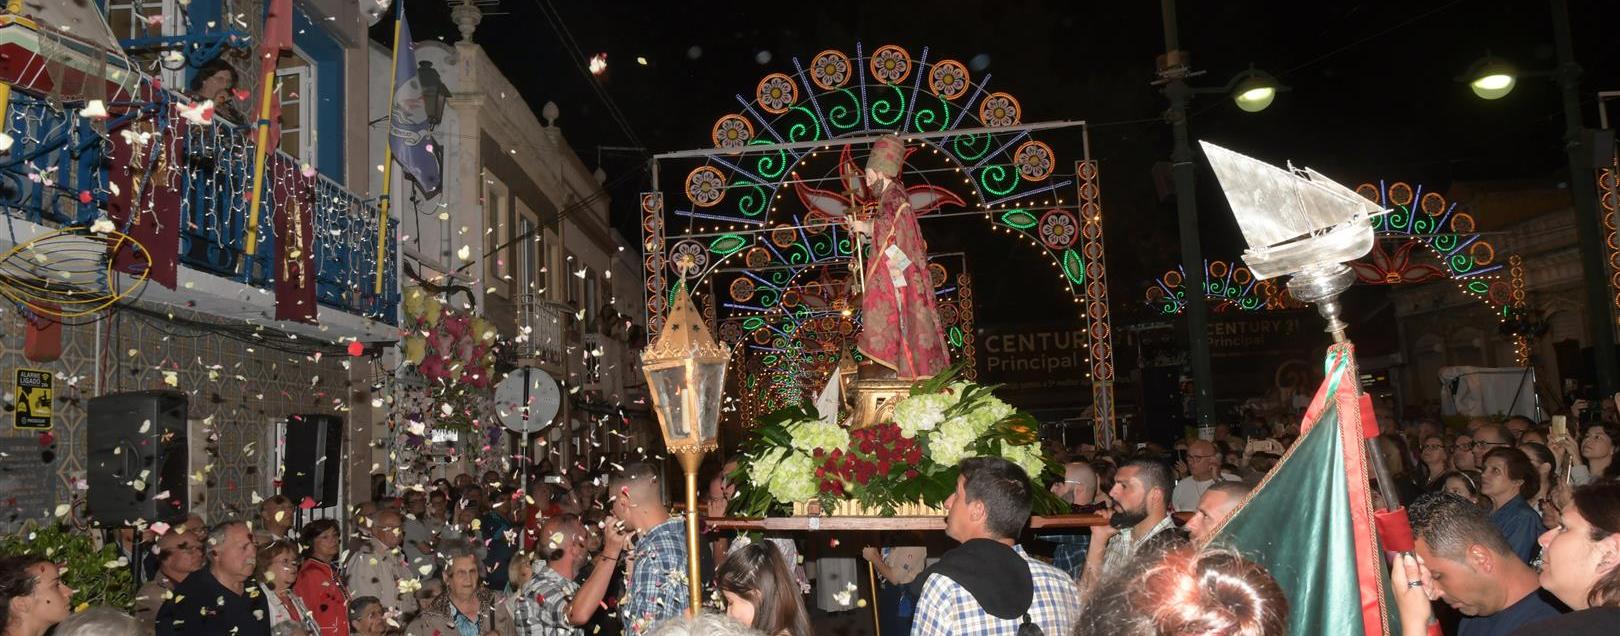 Recordar as Festas Populares de S. Pedro (c/vídeo)